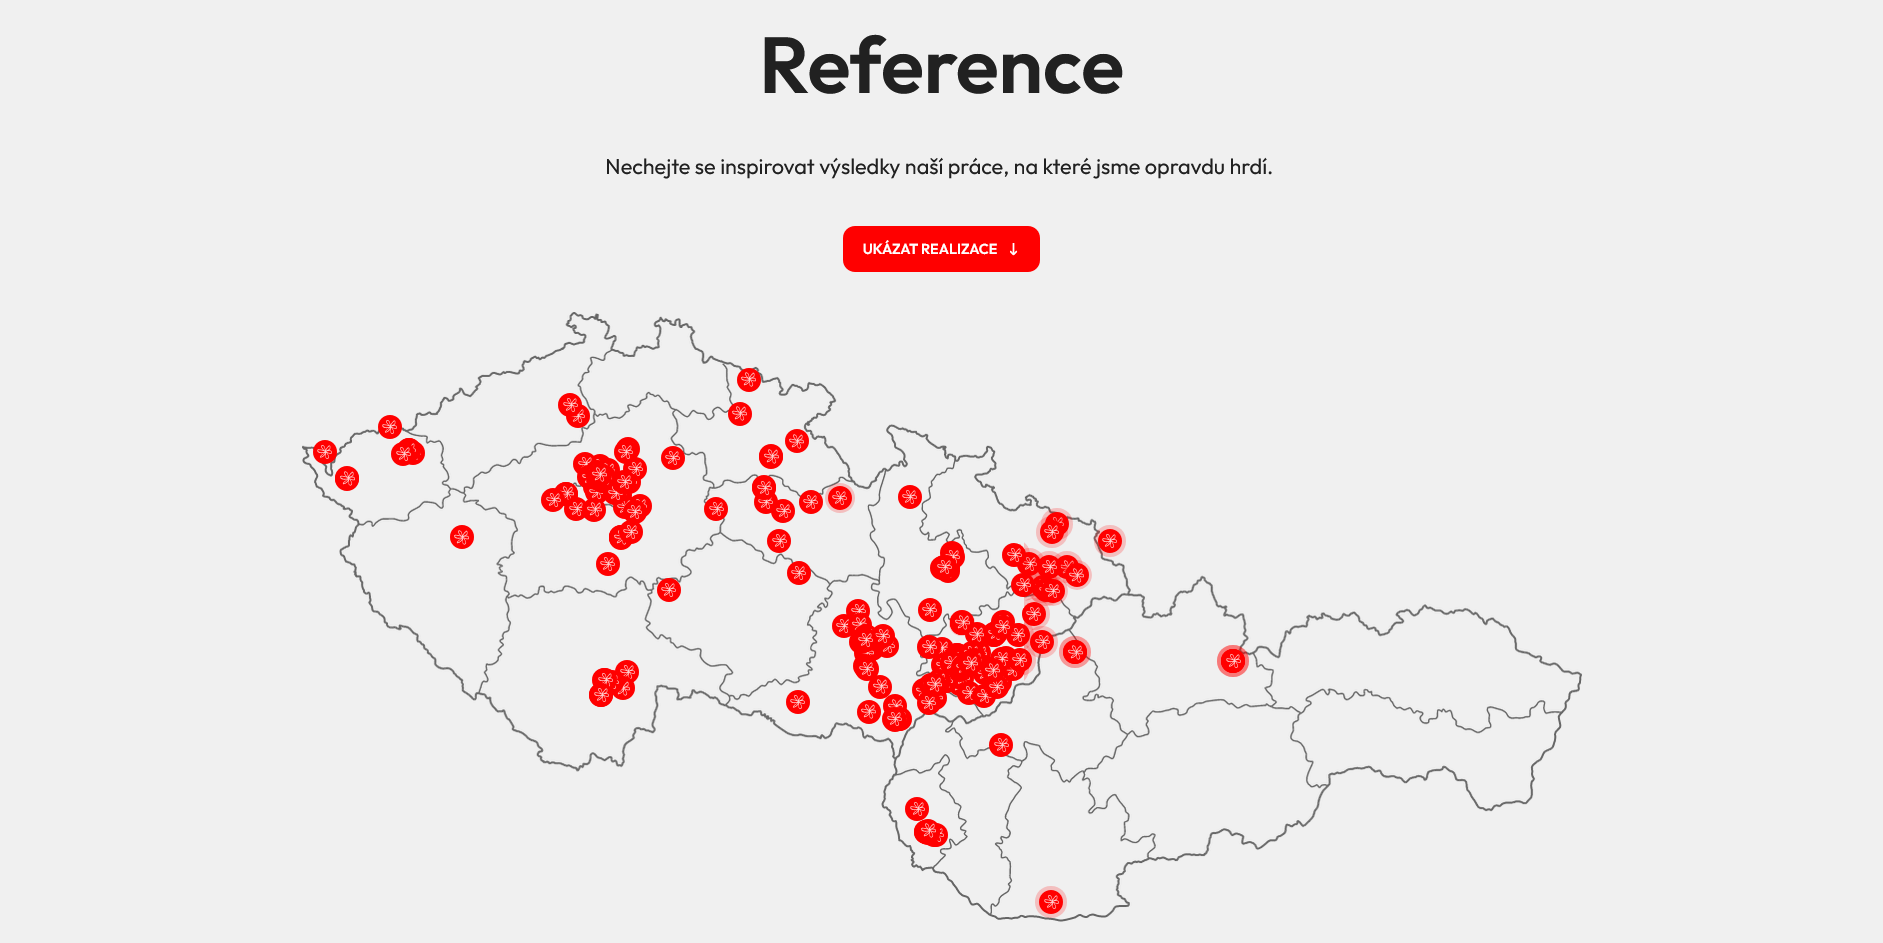 Webové stránky na míru pro firmu Presiza | Mapa referencí, která jasně a srozumitelně ukazuje mapu míst s realizacemi od Presizy